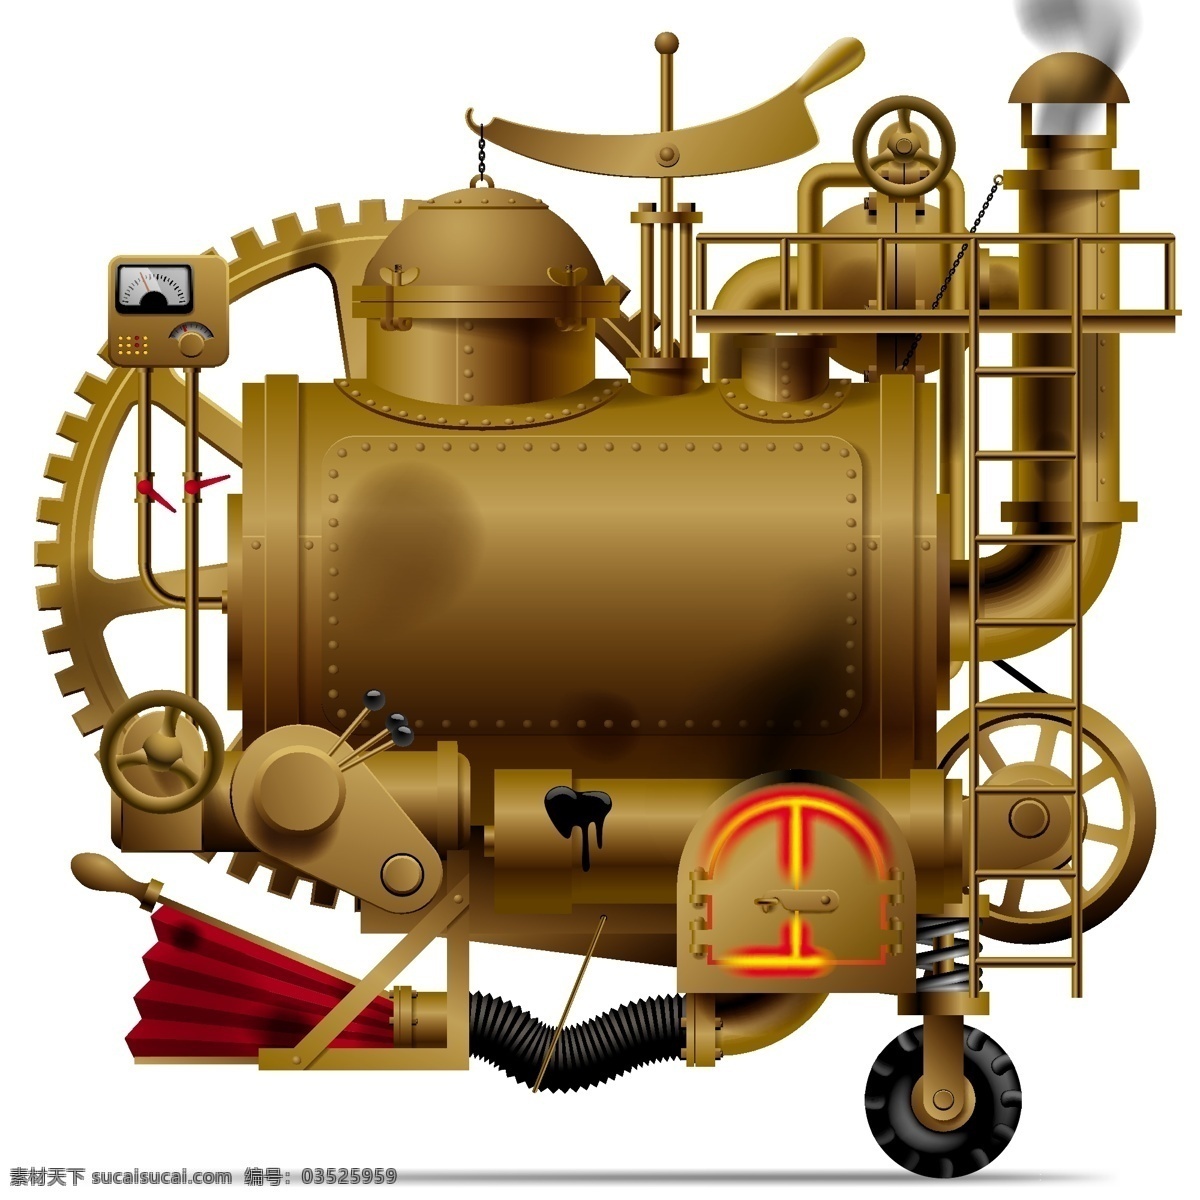 老式 蒸汽机 工业 古典 科技 现代工业 现代科技 引擎 蒸汽 矢量 模板下载 老式蒸汽机 矢量图